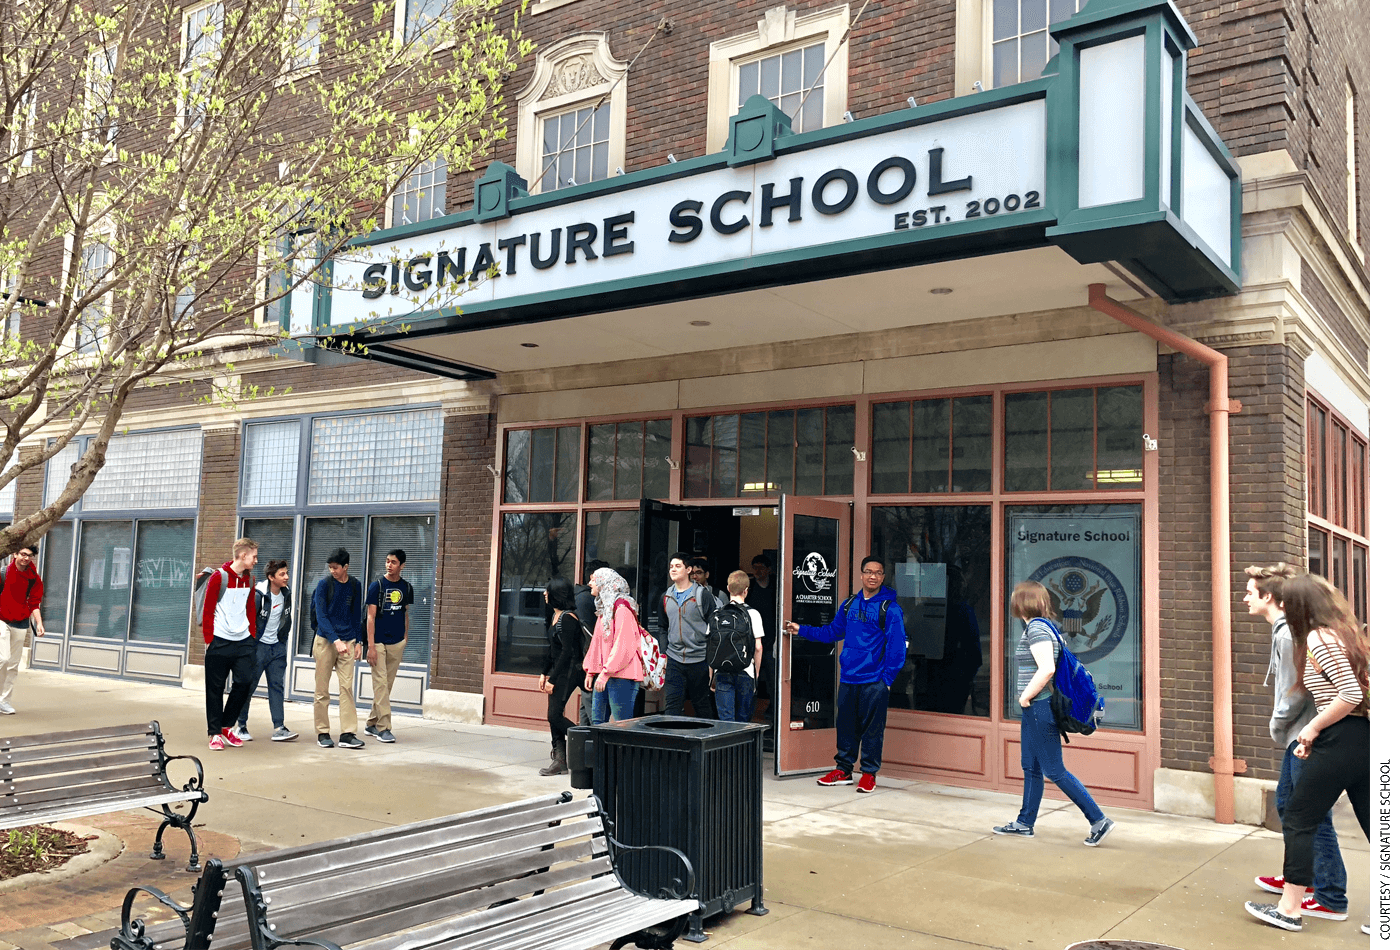 Signature charter school in Evansville, Indiana